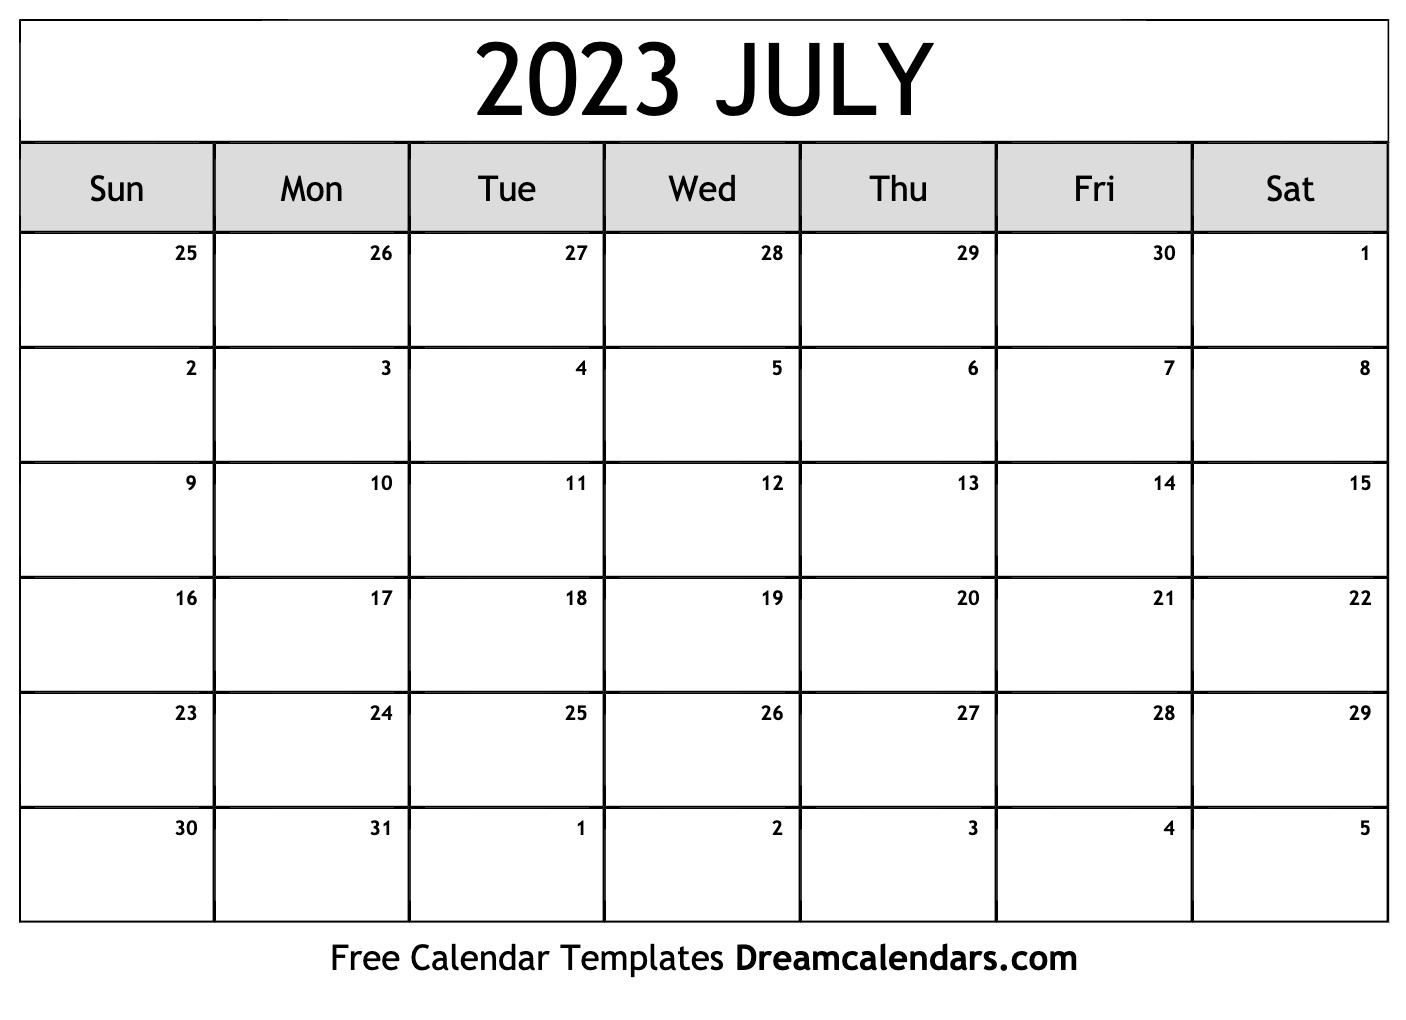 calendario-2023-espa-241-ol-calendario-aug-2021-imagesee